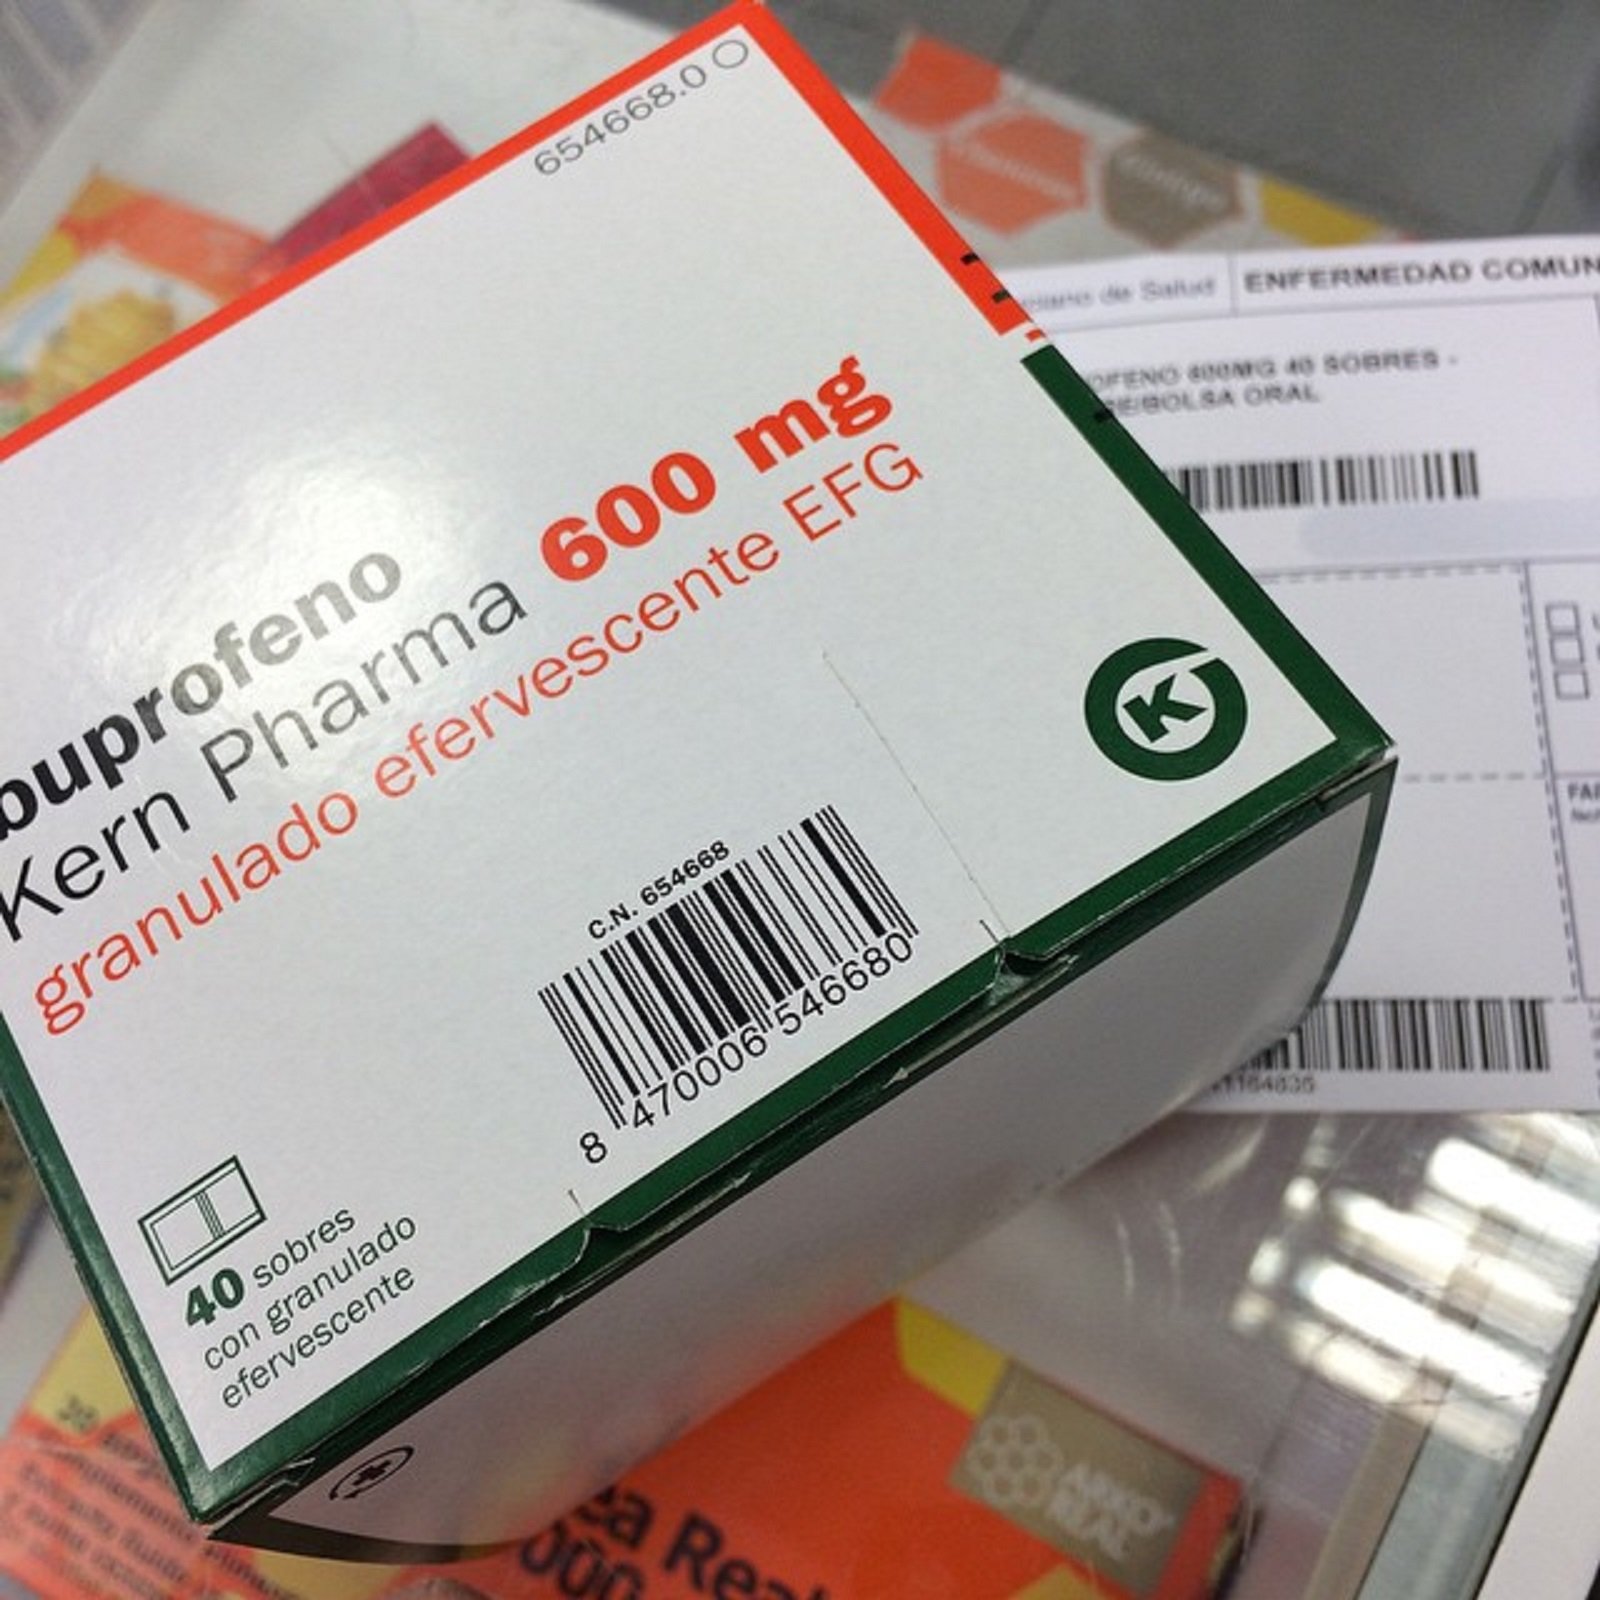 El ibuprofeno y el paracetamol se tendrán que comprar con receta